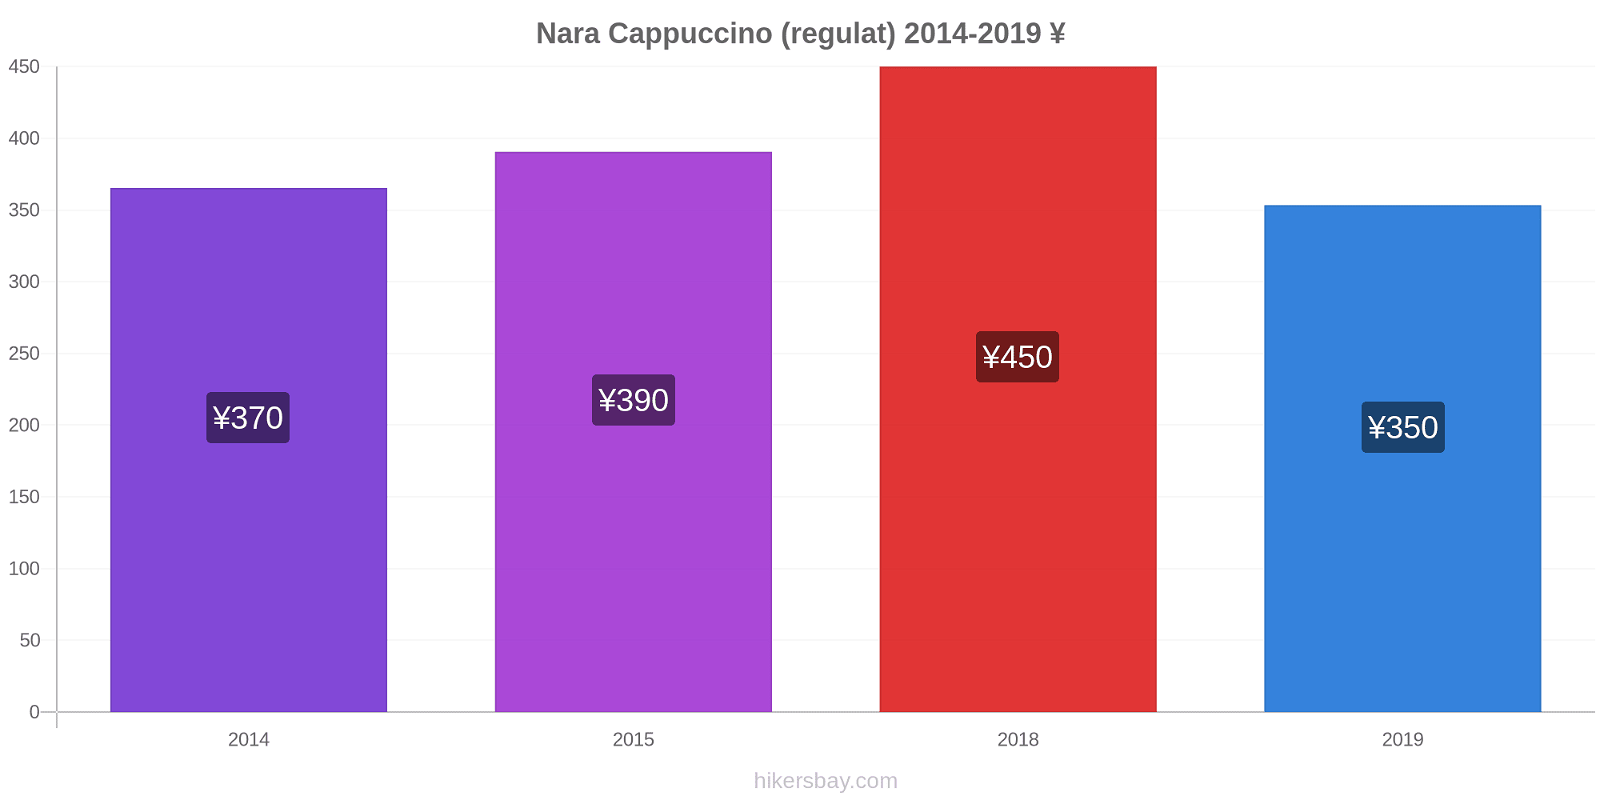 Nara modificări de preț Cappuccino (regulat) hikersbay.com